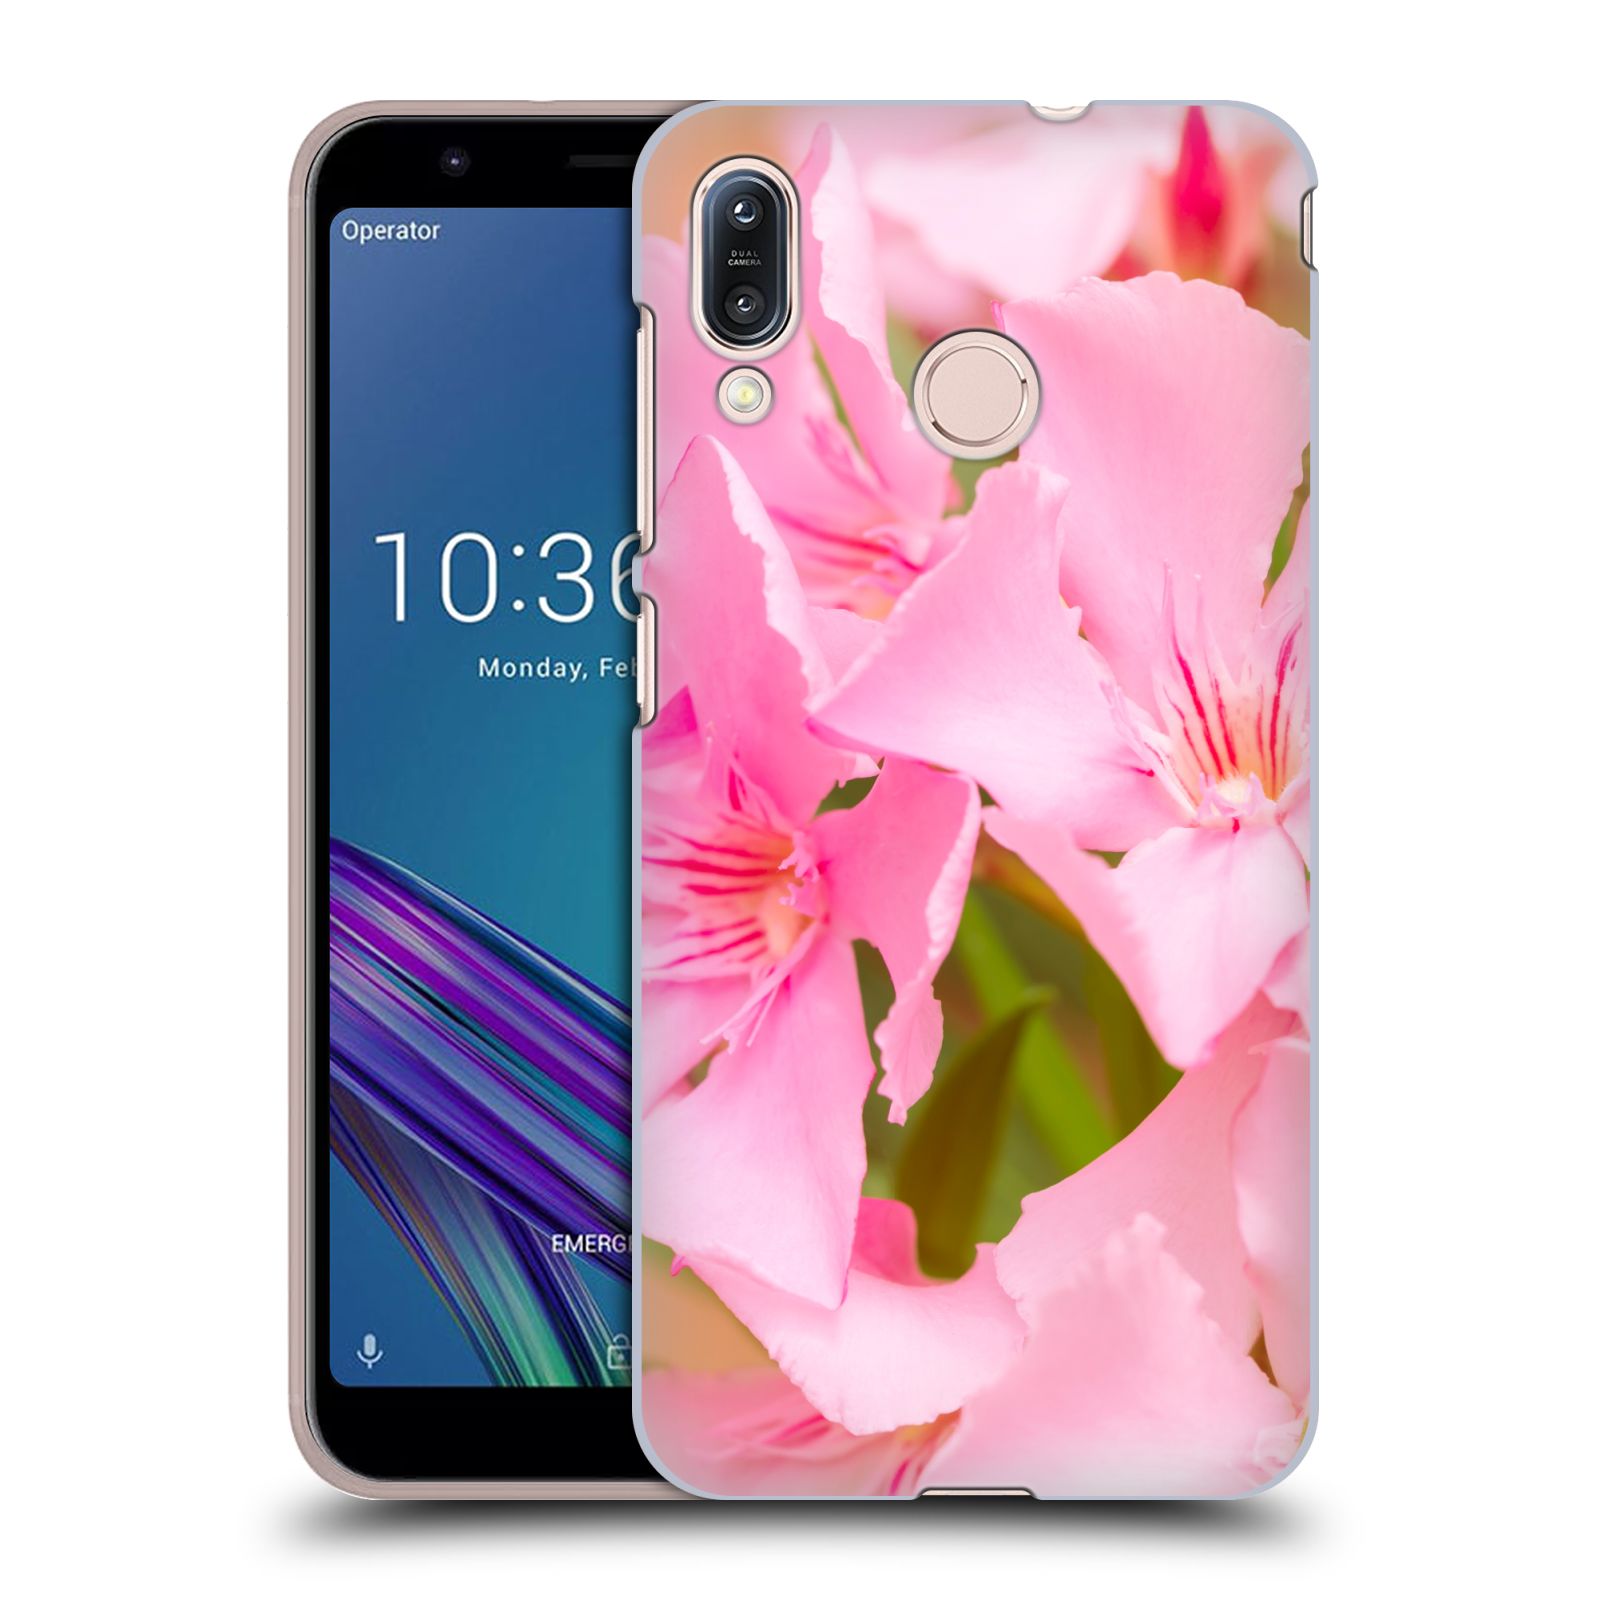 Zadní obal pro mobil Asus Zenfone Max (M1) ZB555KL - HEAD CASE - Beli - Růžové květy květina